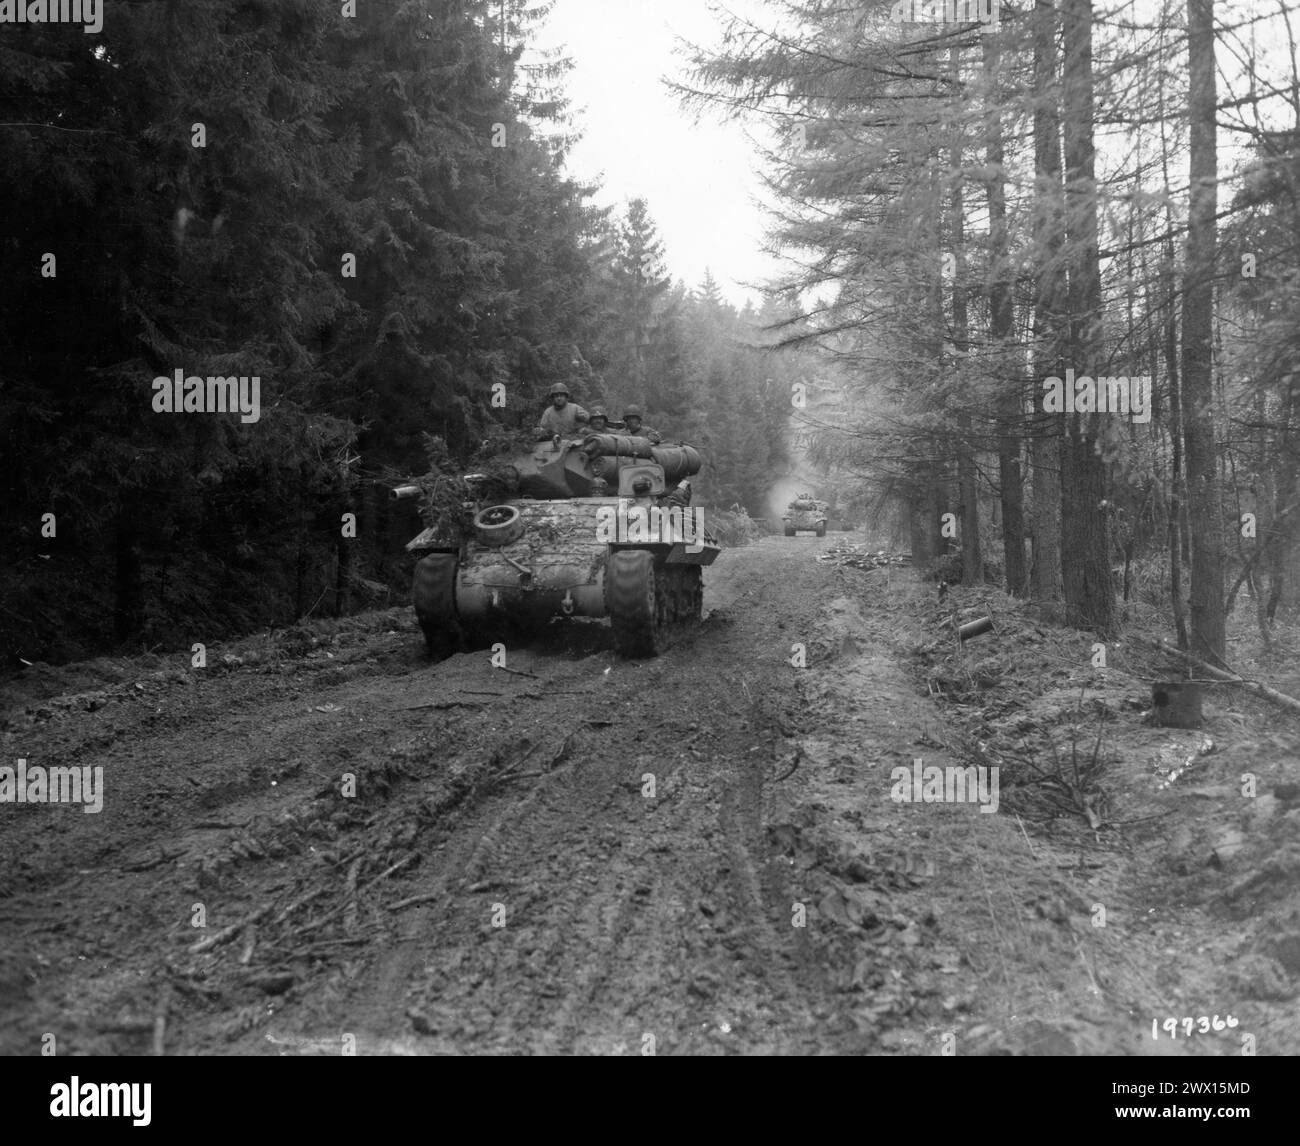 Titolo originale: I cacciatorpediniere m-10 si spostano attraverso la foresta di Hurtgen, sulla strada per Schmidt, in Germania, per incontrare un'unità di carri armati tedesca che occupa quella città. 11/4/44. - 893° Battaglione TD. Foto Stock